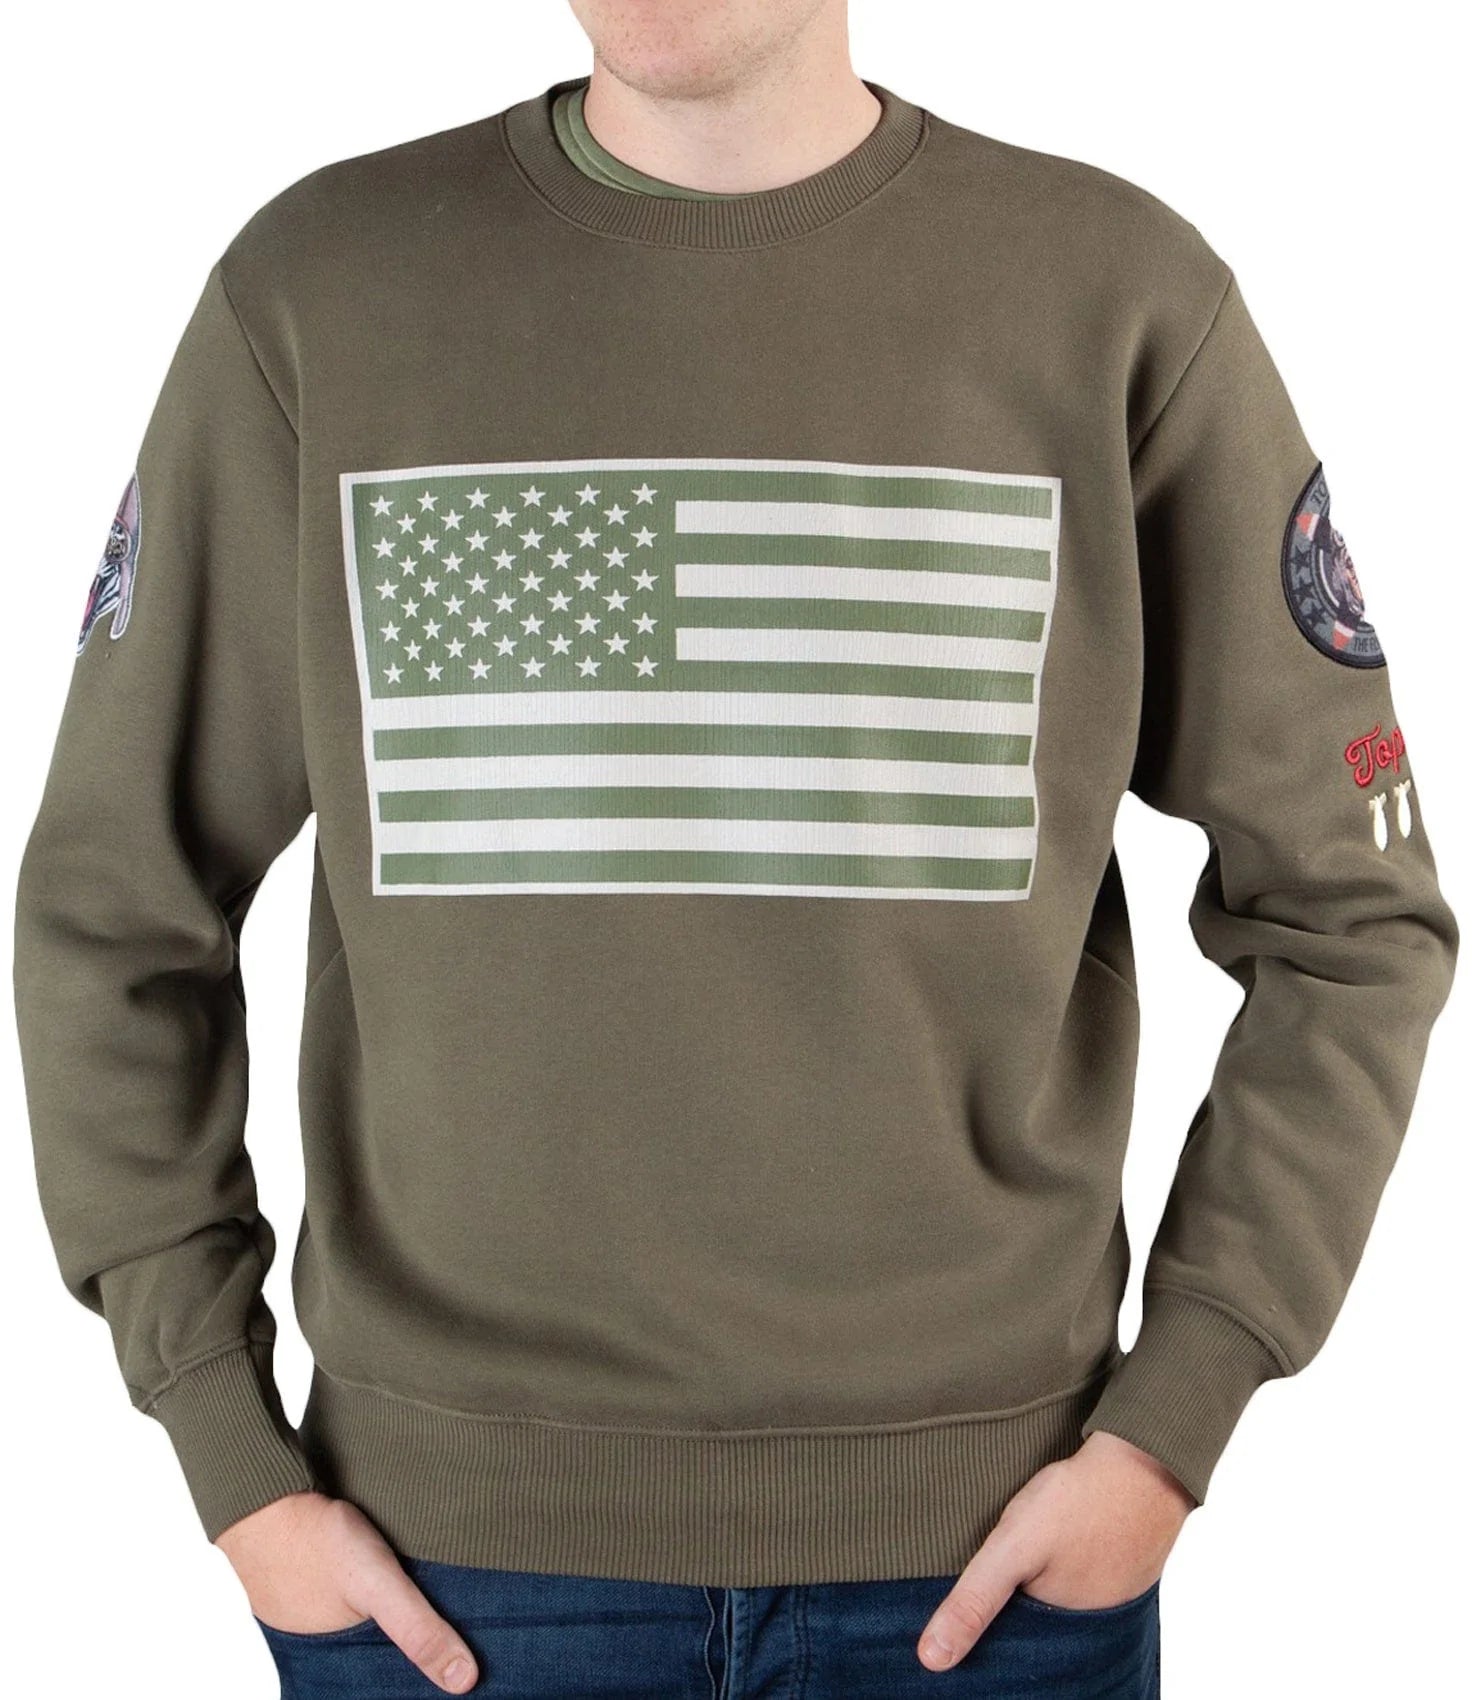 Top GunSweatshirt round neck "US Flag" Army